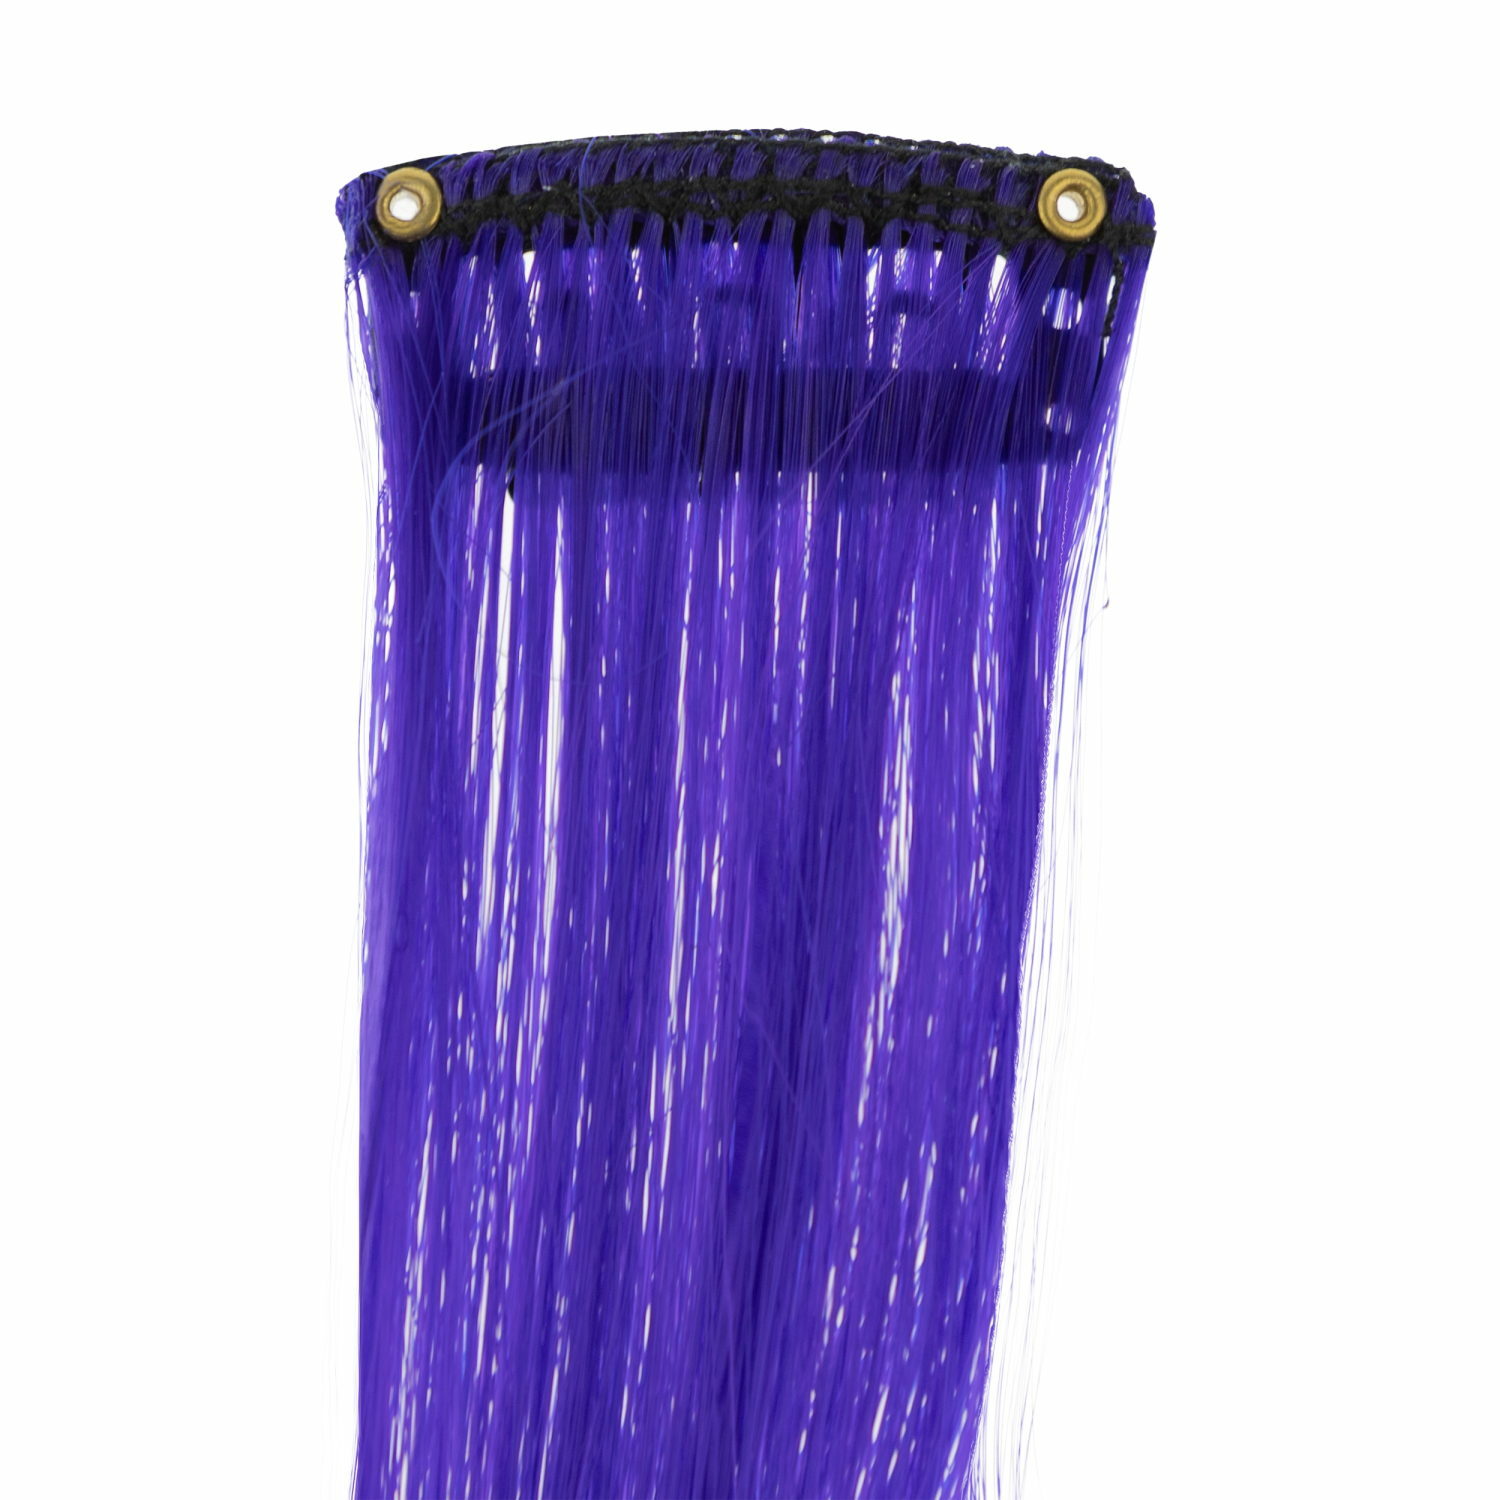 Цветные пряди для волос Lukky Fashion на заколках искусственные фиолетовый градиент 55 см аксессуары для девочек - фото 7